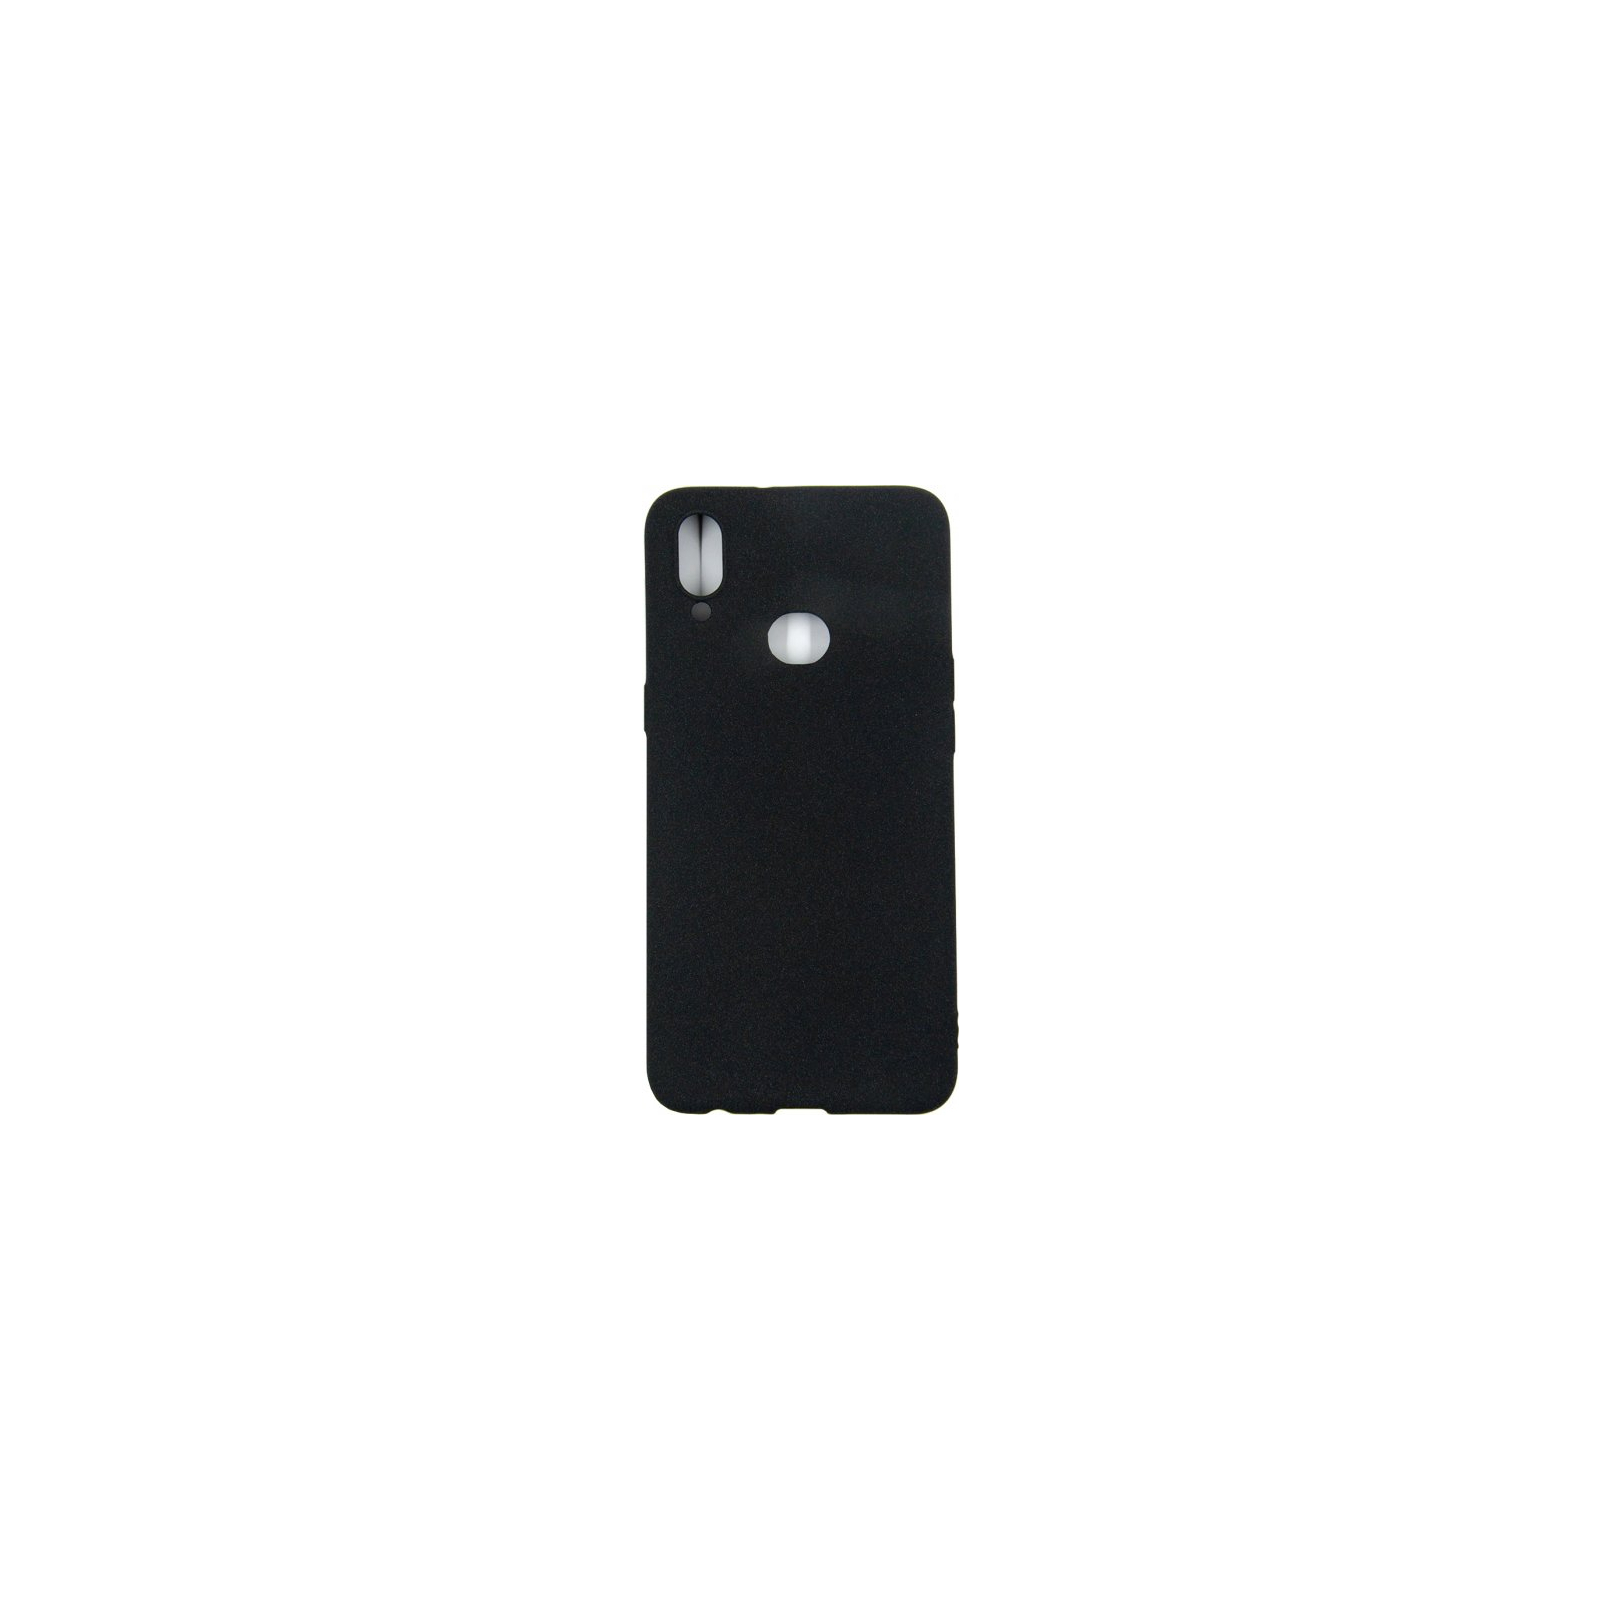 Чехол для мобильного телефона Dengos Carbon Samsung Galaxy A10s, black (DG-TPU-CRBN-01)